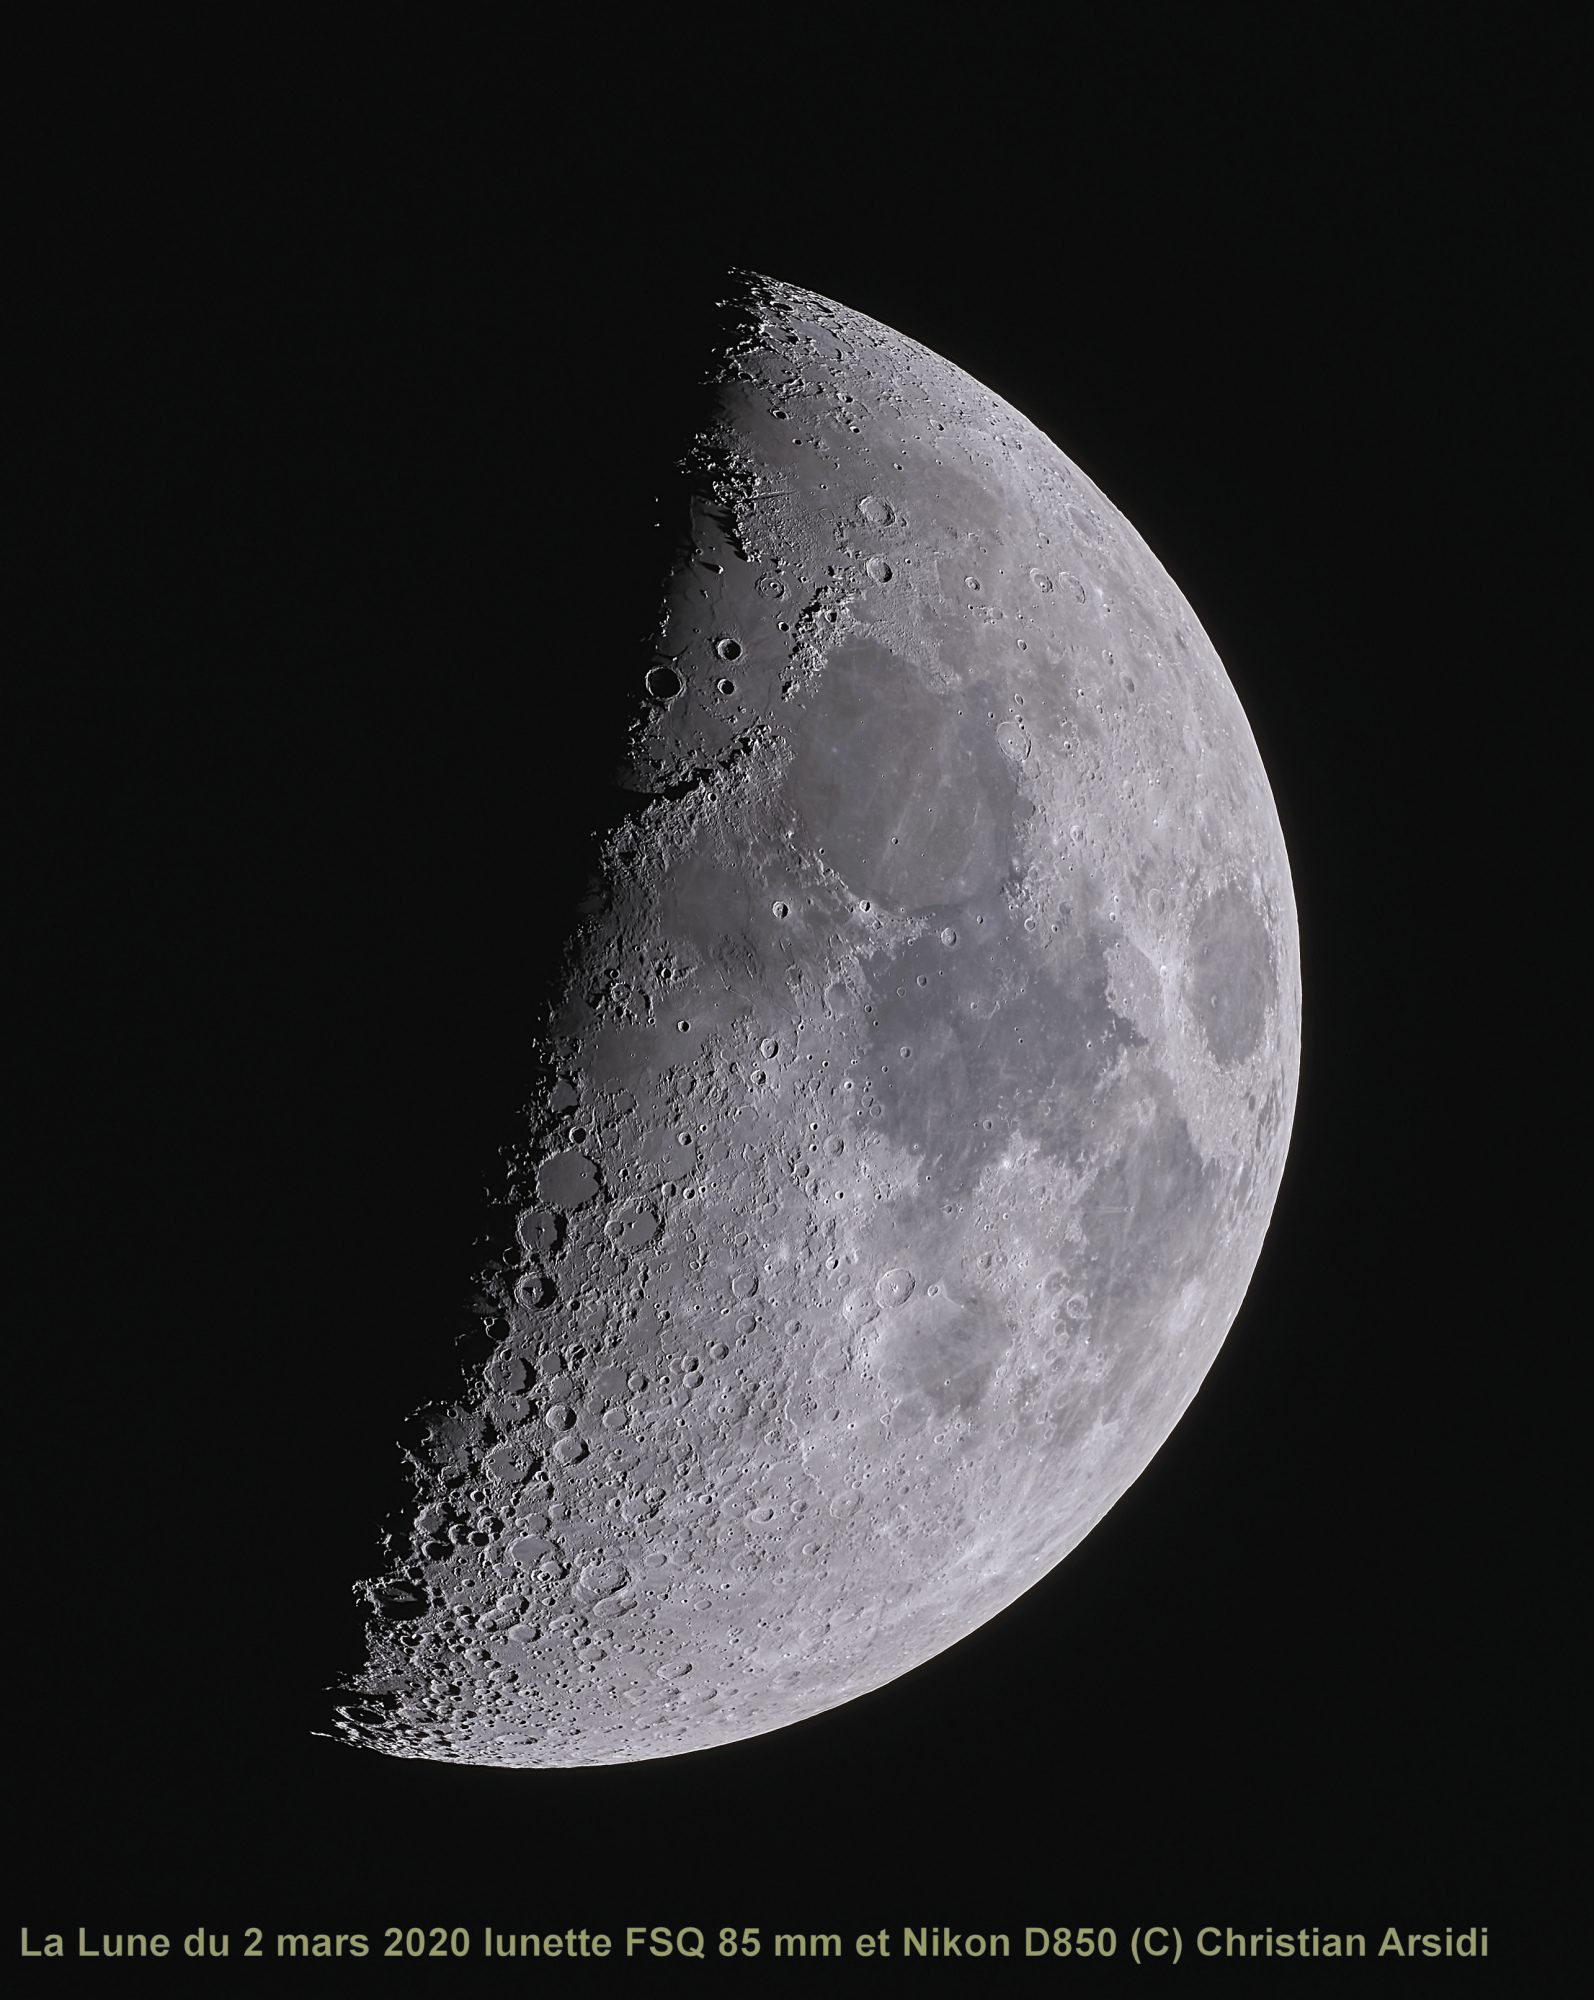 La Lune 25 images V2 TTB 100% V3 Jpeg.jpg